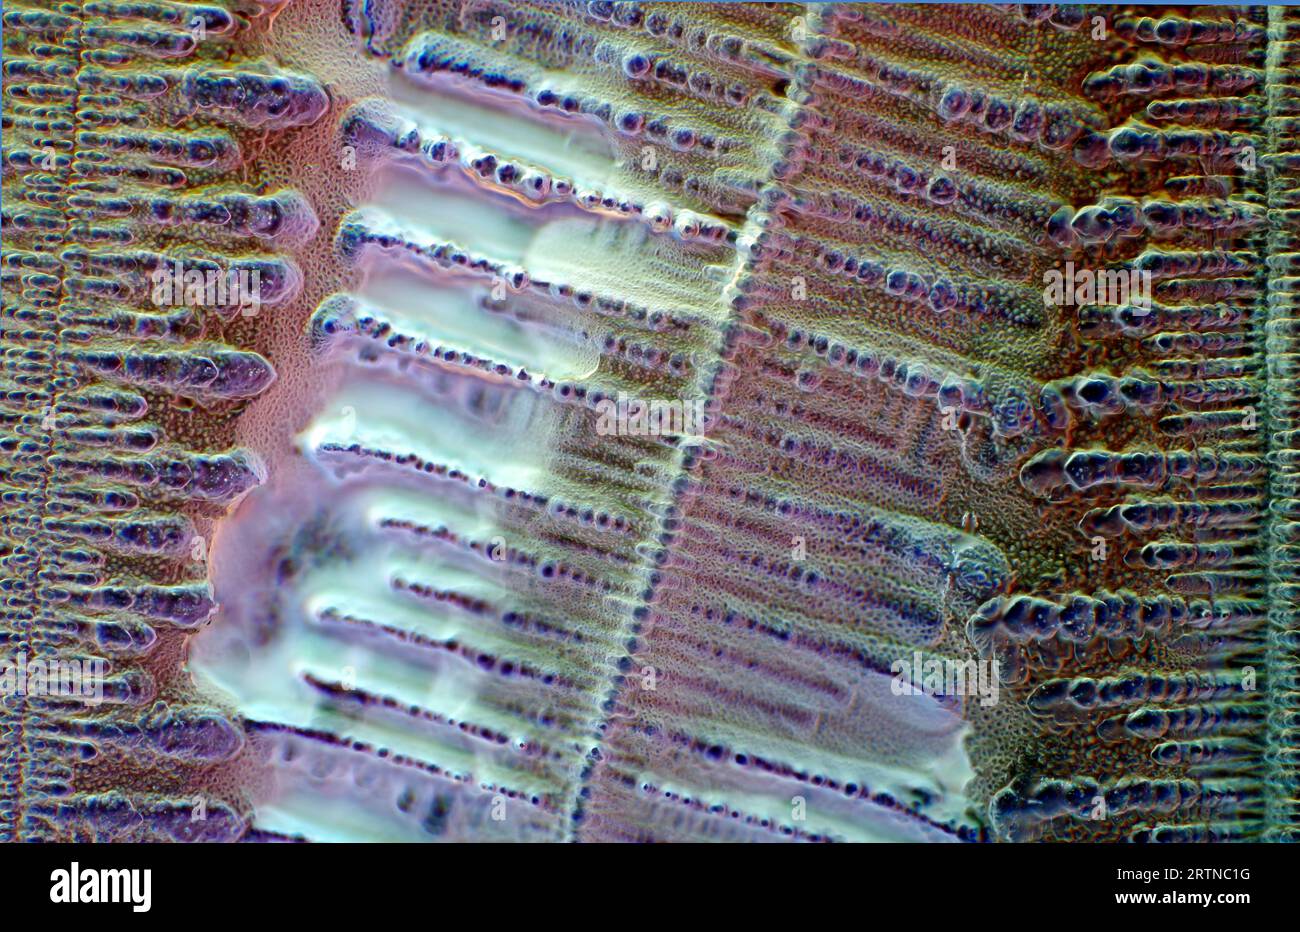 Das Bild zeigt kristallisierte Sojasauce, fotografiert durch das Mikroskop in polarisiertem Licht mit einer Vergrößerung von 100X Stockfoto